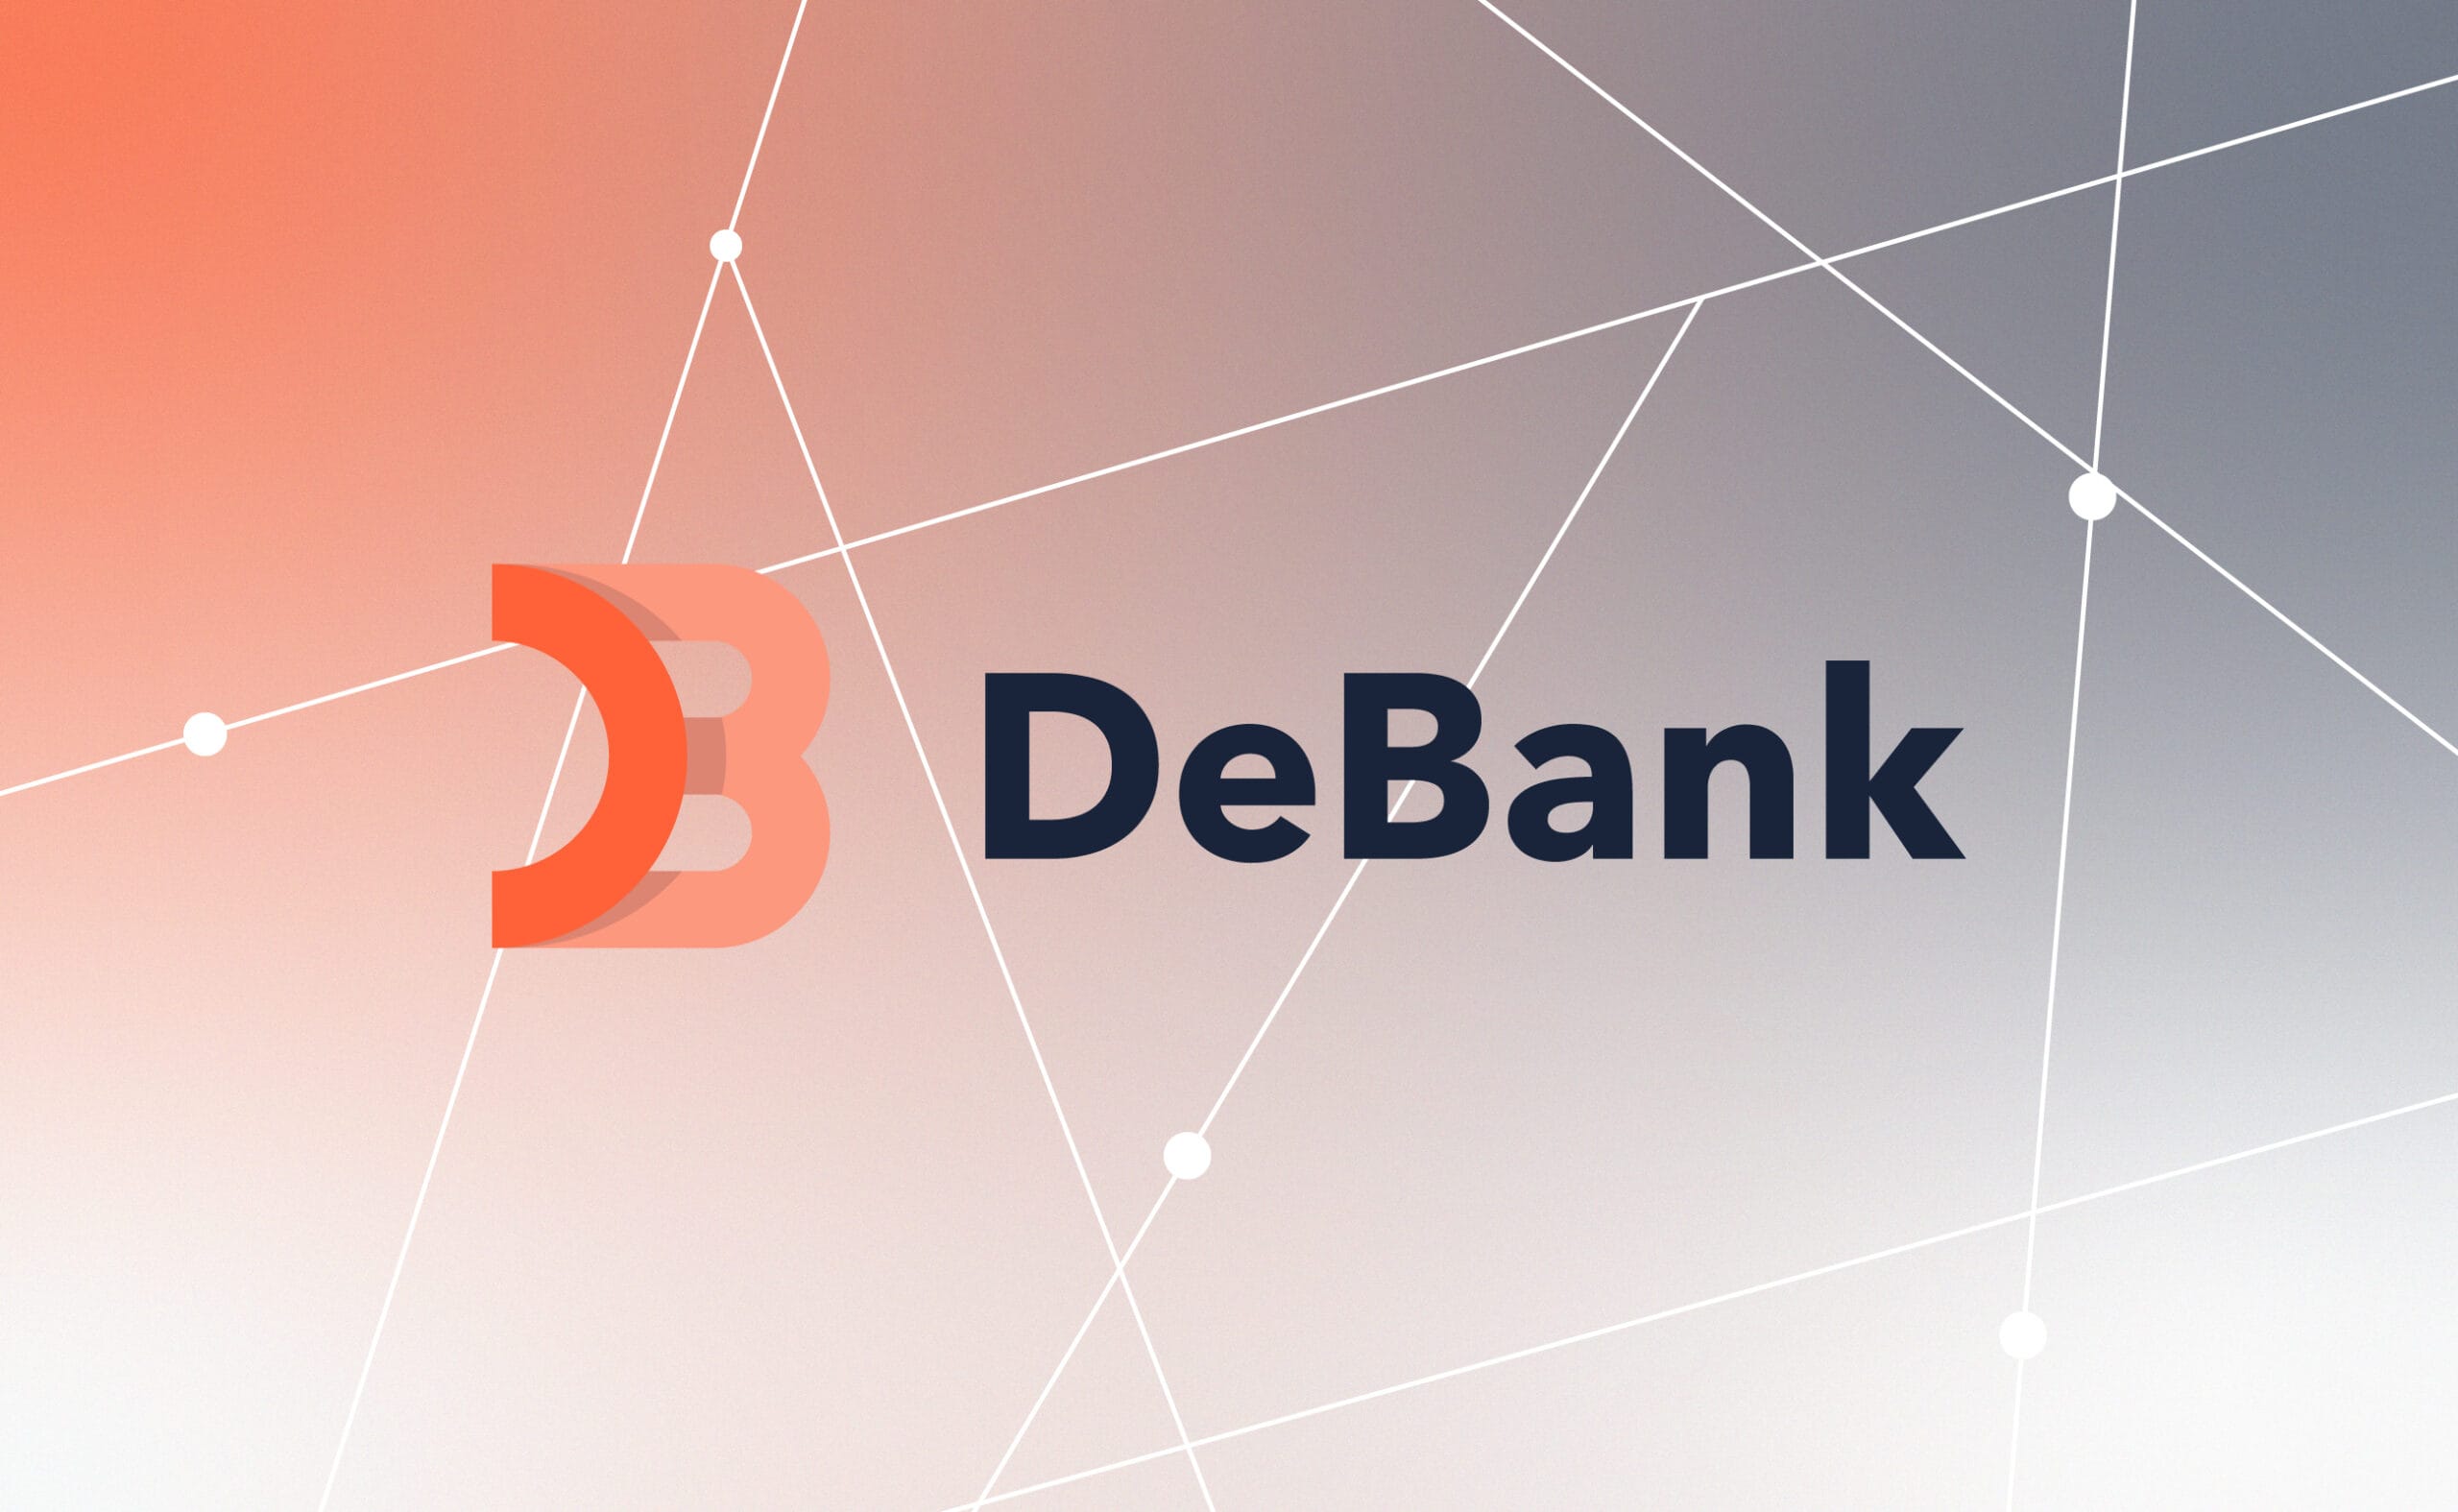 DeBank – nowa odznaka. Główny kolaż artykułu.